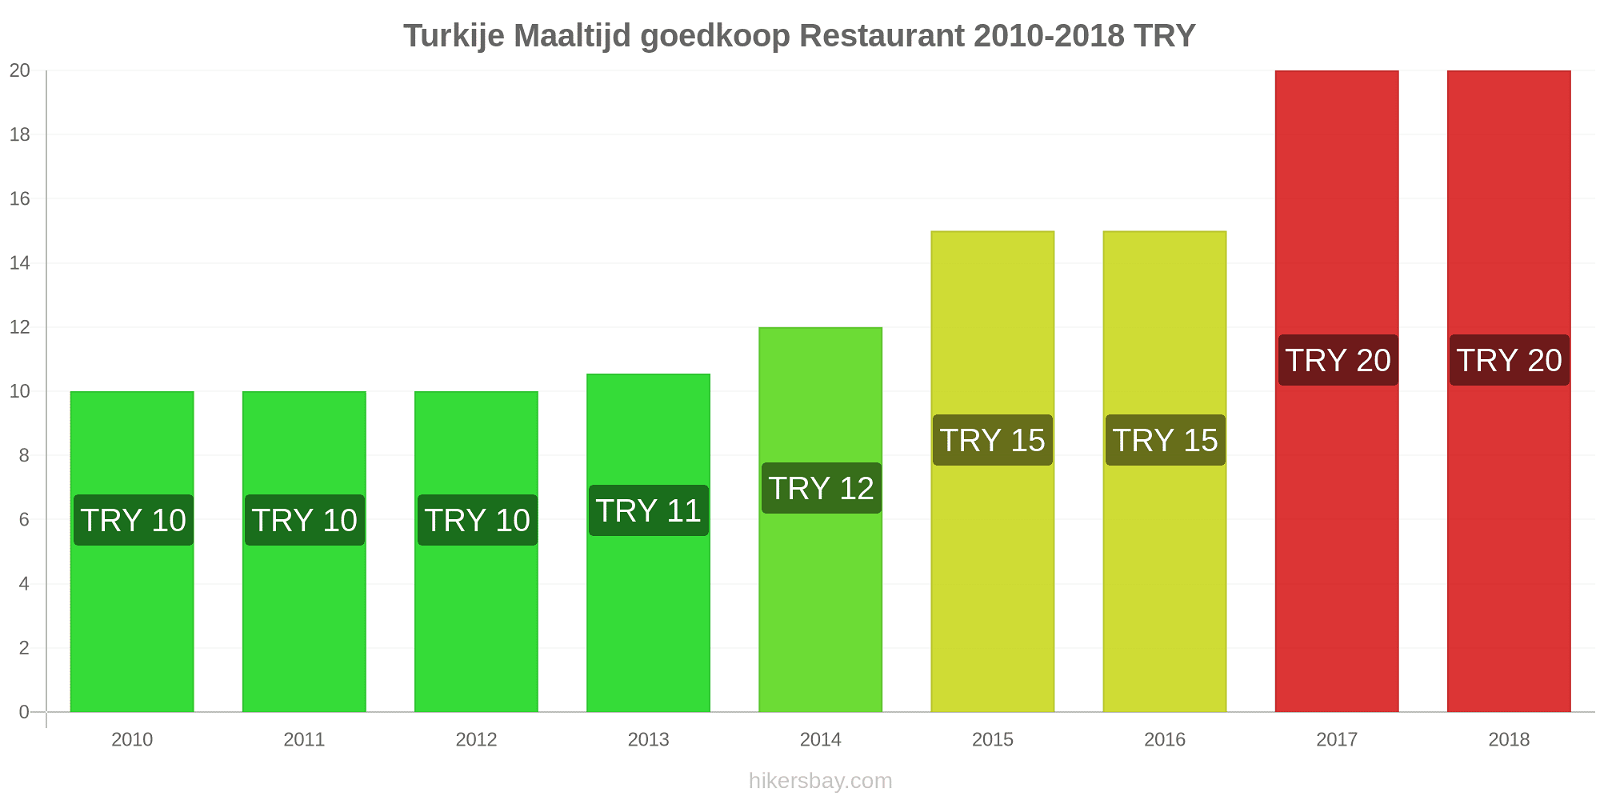 Turkije prijswijzigingen Maaltijd in een goedkoop restaurant hikersbay.com